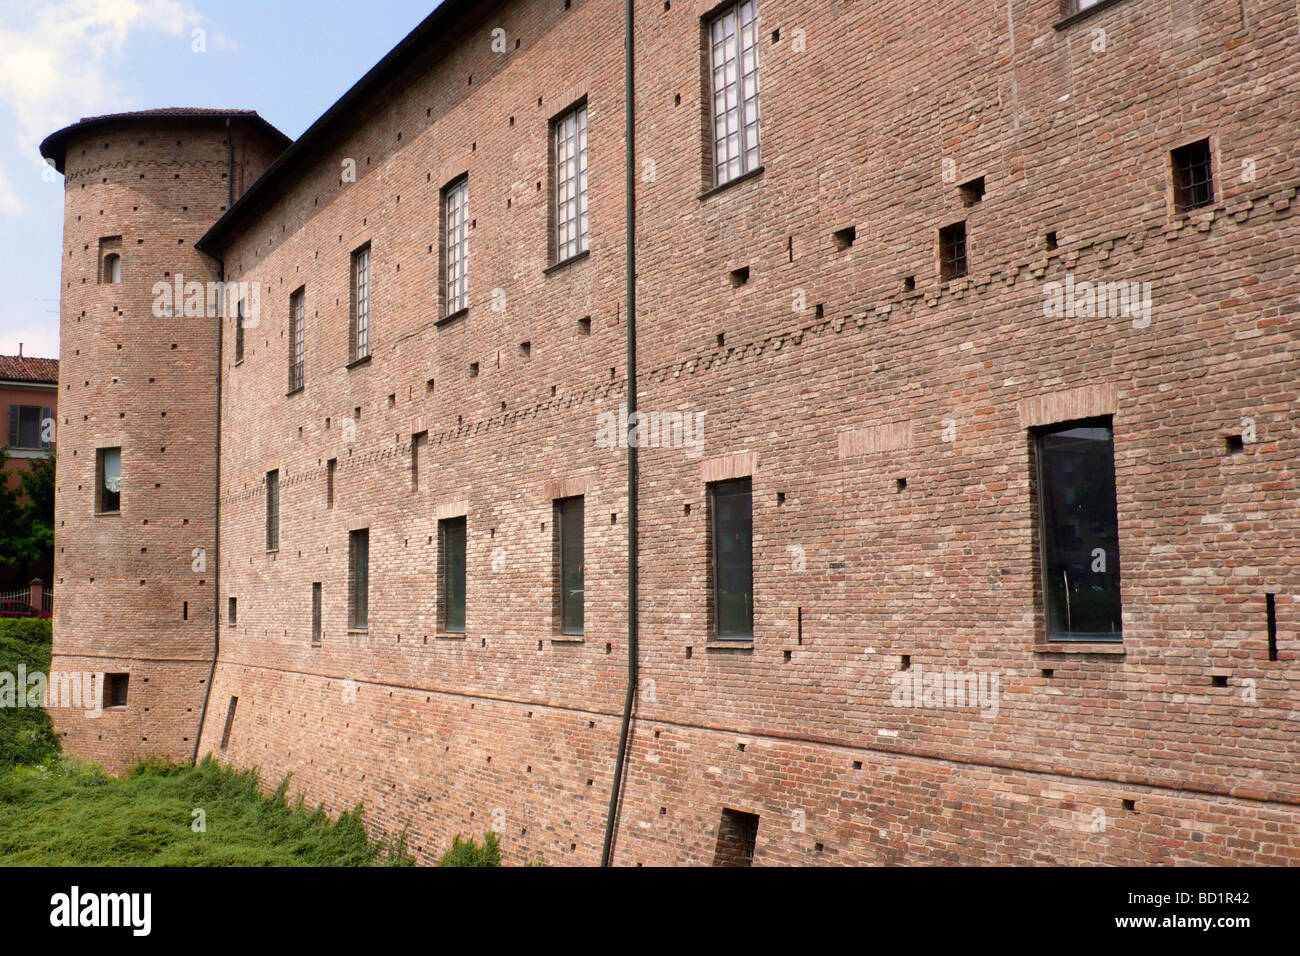 Palazzo Farnese Piacenza Italy Stock Photo